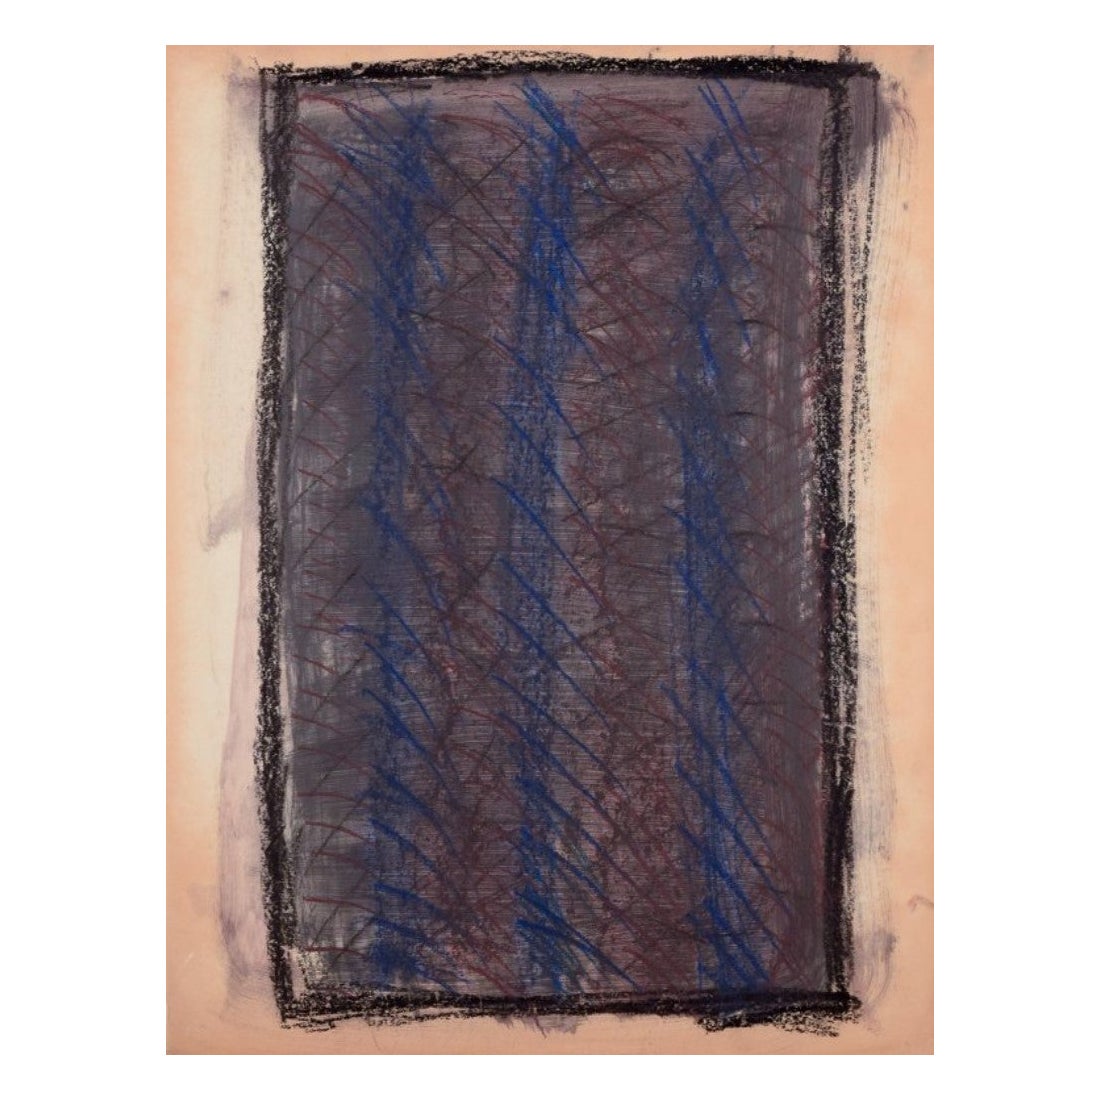 Monique Beucher. Technique mixte sur papier. Composition dans des tons sombres. 1980